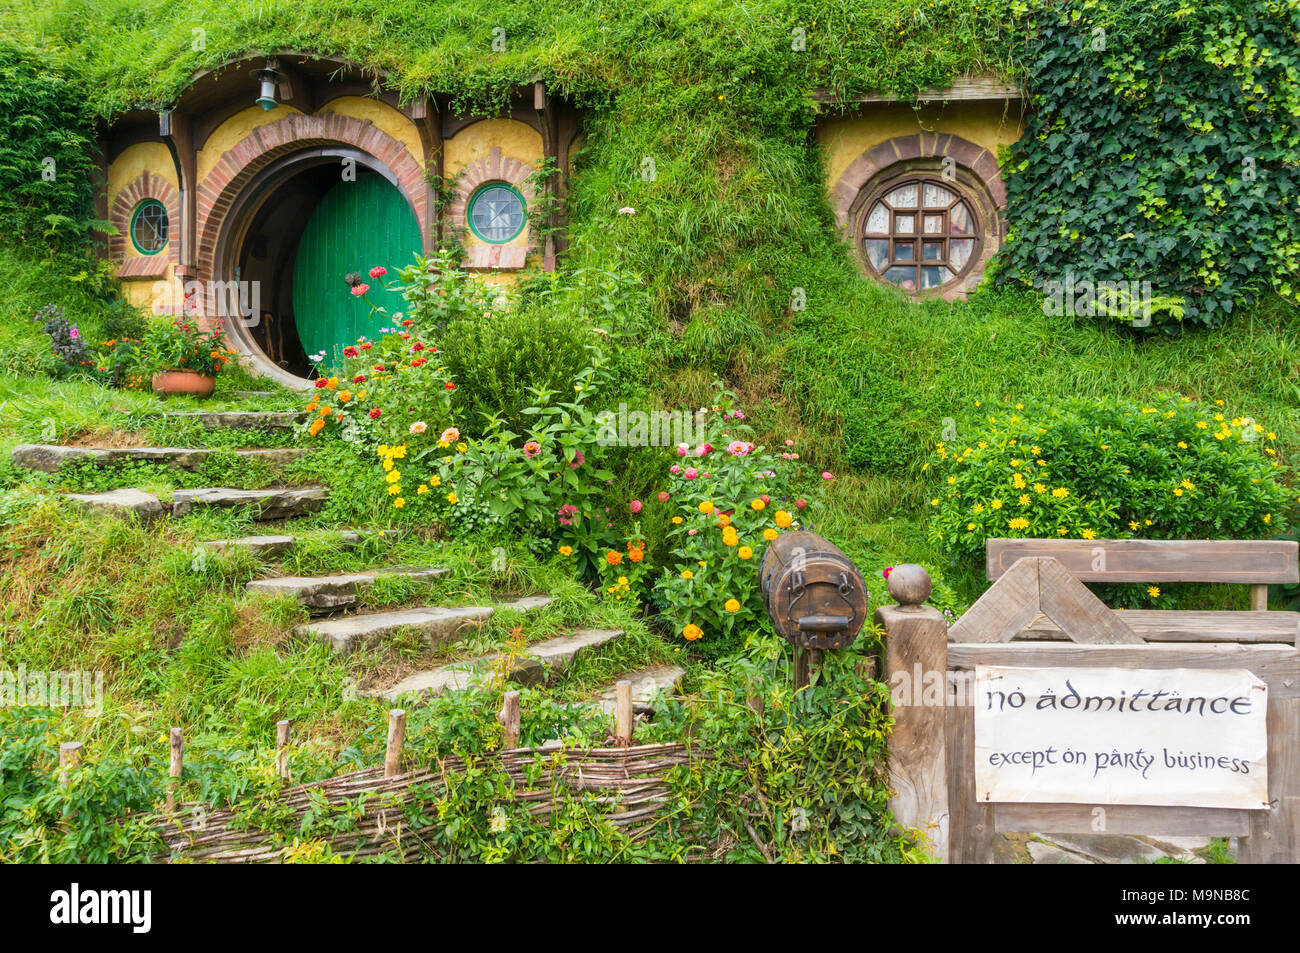 Nuova Zelanda Hobbiton Nuova Zelanda Matamata Hobbiton set cinematografico fictional del villaggio di Hobbiton in shire da The Hobbit e Il signore degli anelli libri Foto Stock